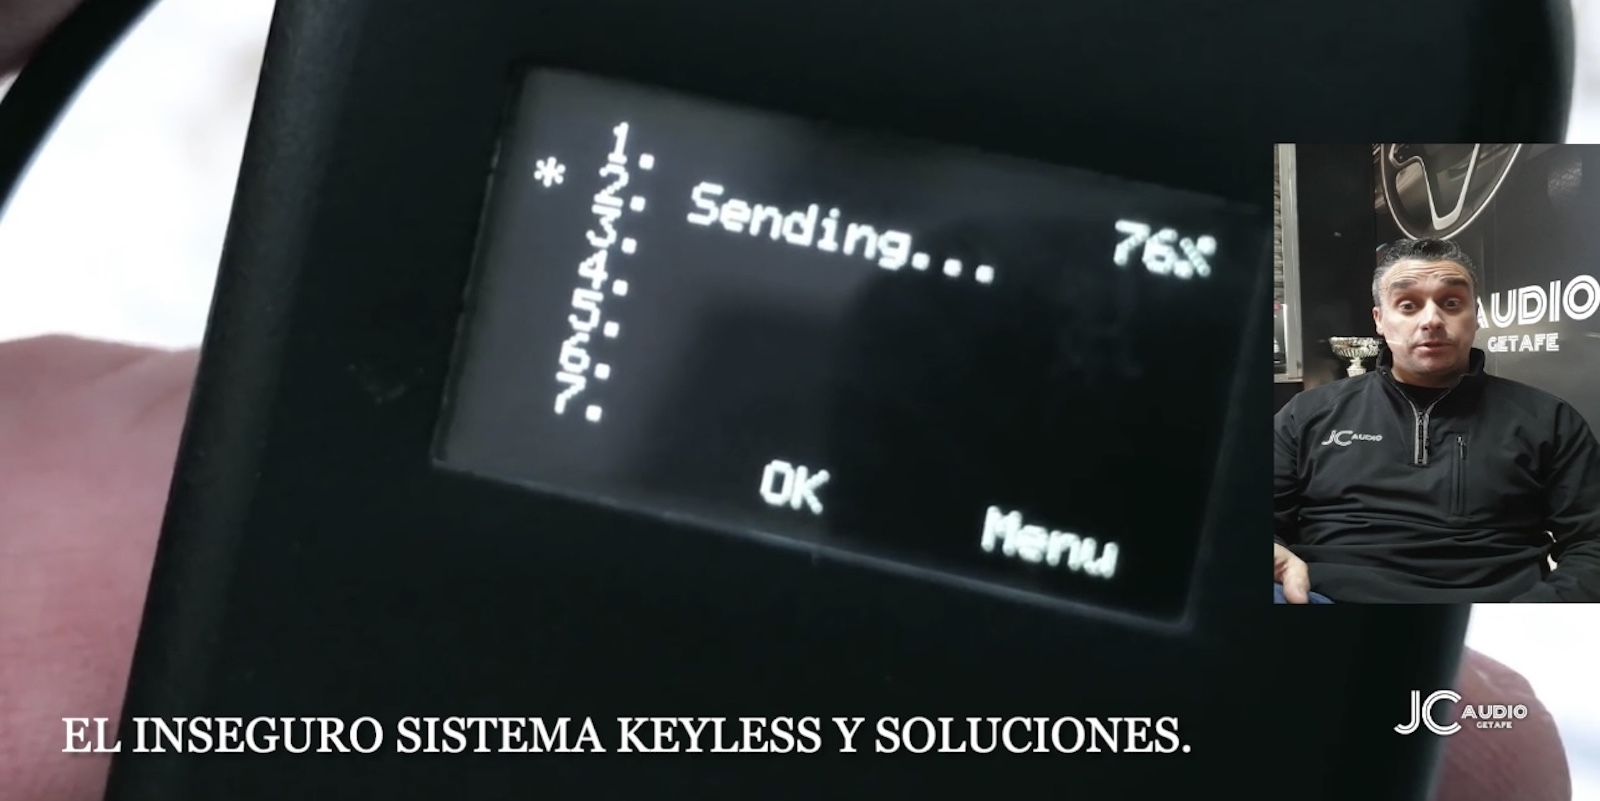 El Inseguro Sistema Keyless y Soluciones